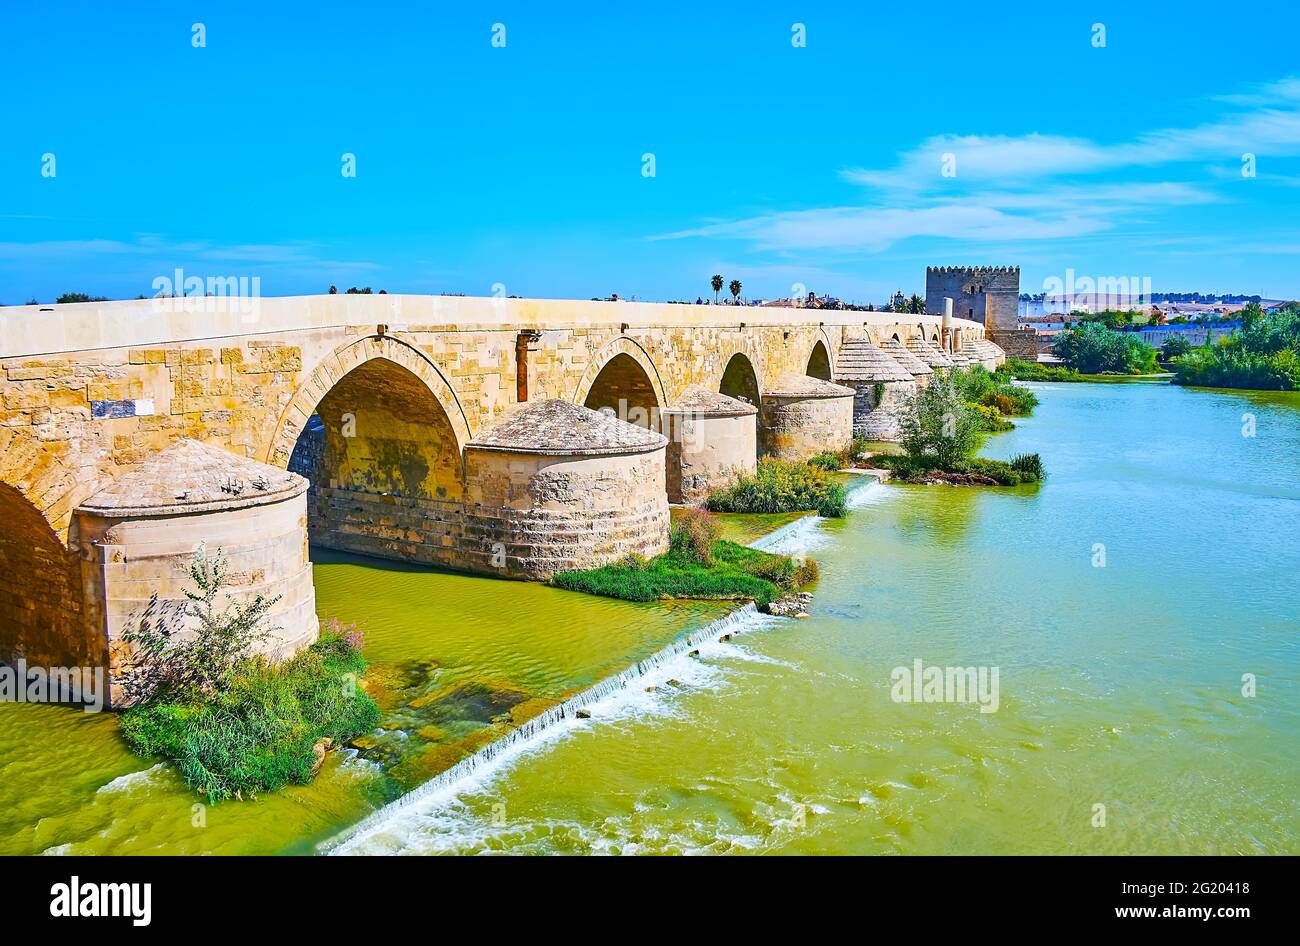 Genießen Sie den Fluss Guadalquivir mit Blick auf die antike römische Brücke und den Calahorra-Turm im Hintergrund, Cordoba, Spanien Stockfoto